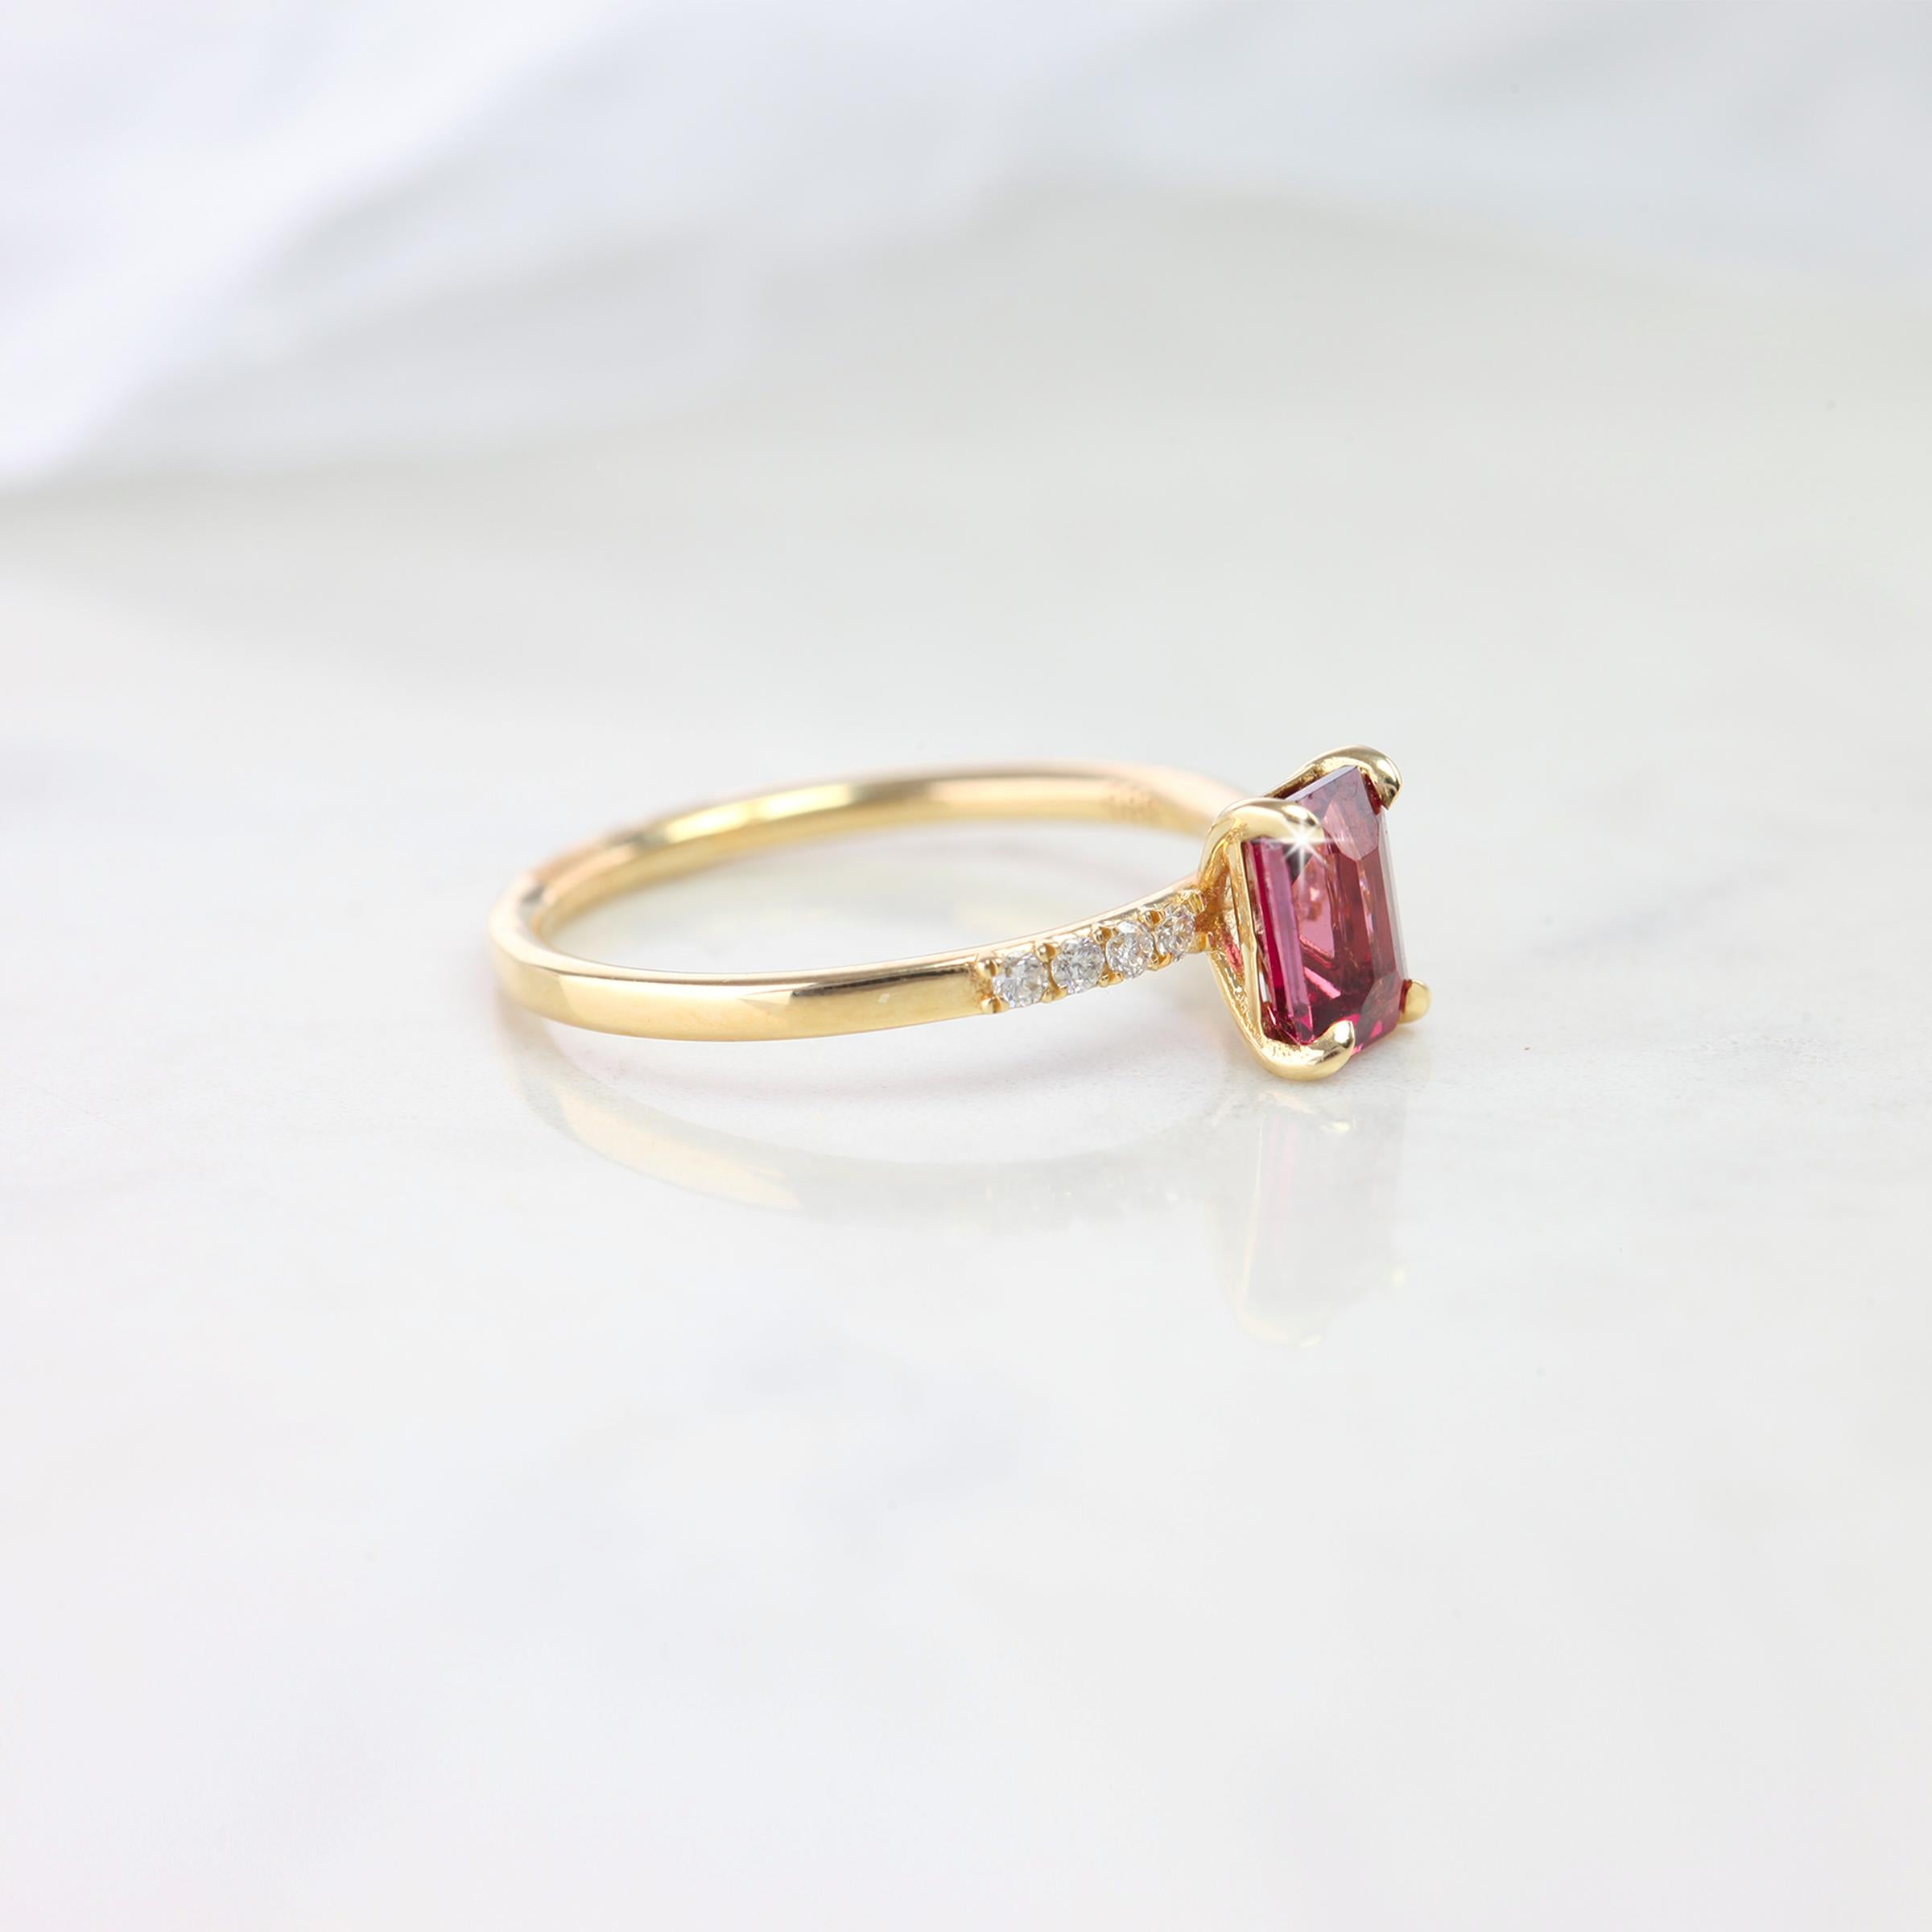 Rosa Turmalin zierlichen Ring, Smaragd-Schliff rosa Turmalin zierlichen Ring mit Pave-Diamant-Fassung von Händen aus Ring, um den Stein Formen erstellt. Gute Ideen für einen Statement-Ring oder einen stapelbaren Ring als Geschenk für sie.

Der